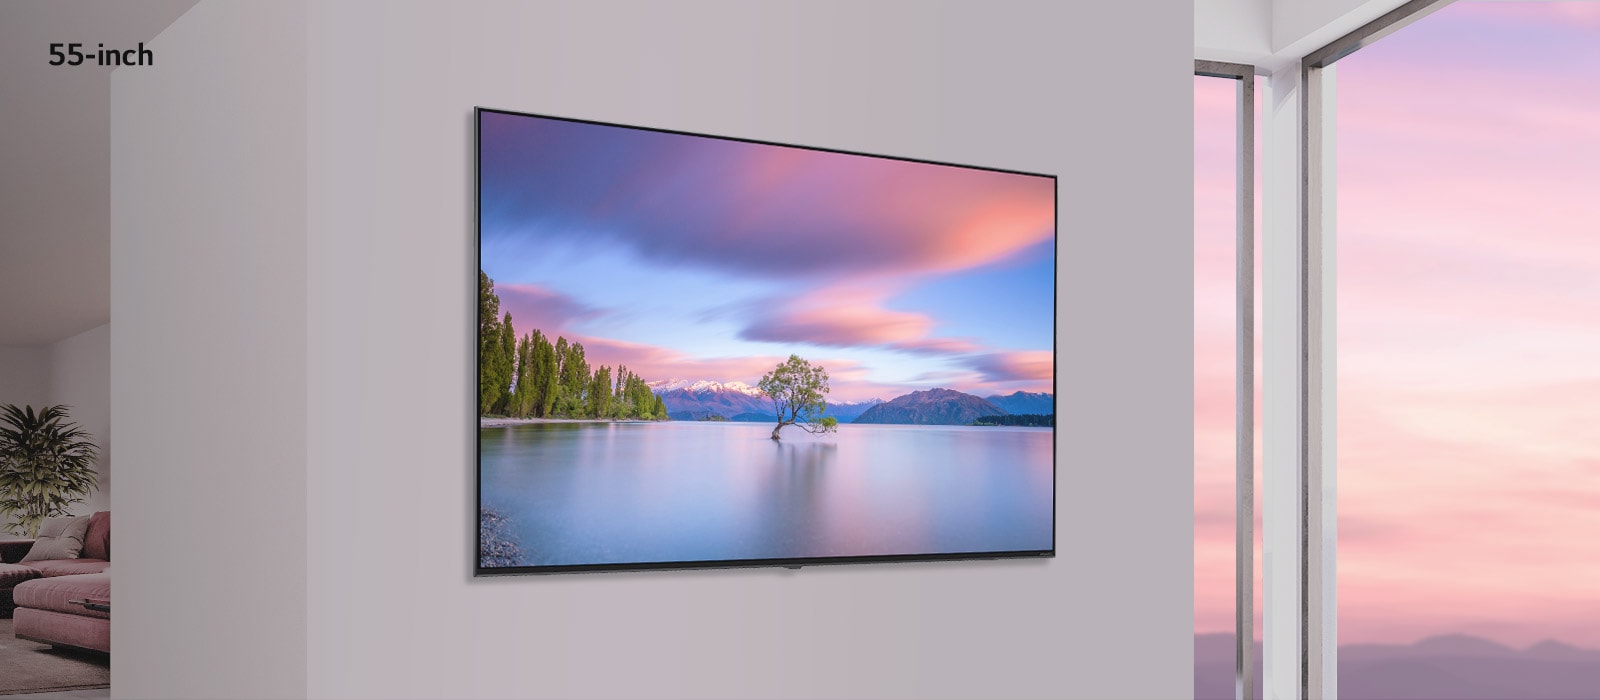 Prizor koji prikazuje televizor ravnog ekrana montiran na bijelom zidu. Kako se slika pomiče s jedne strane na drugu, mijenja se od 55-inčnog na 86-inčni televizor.